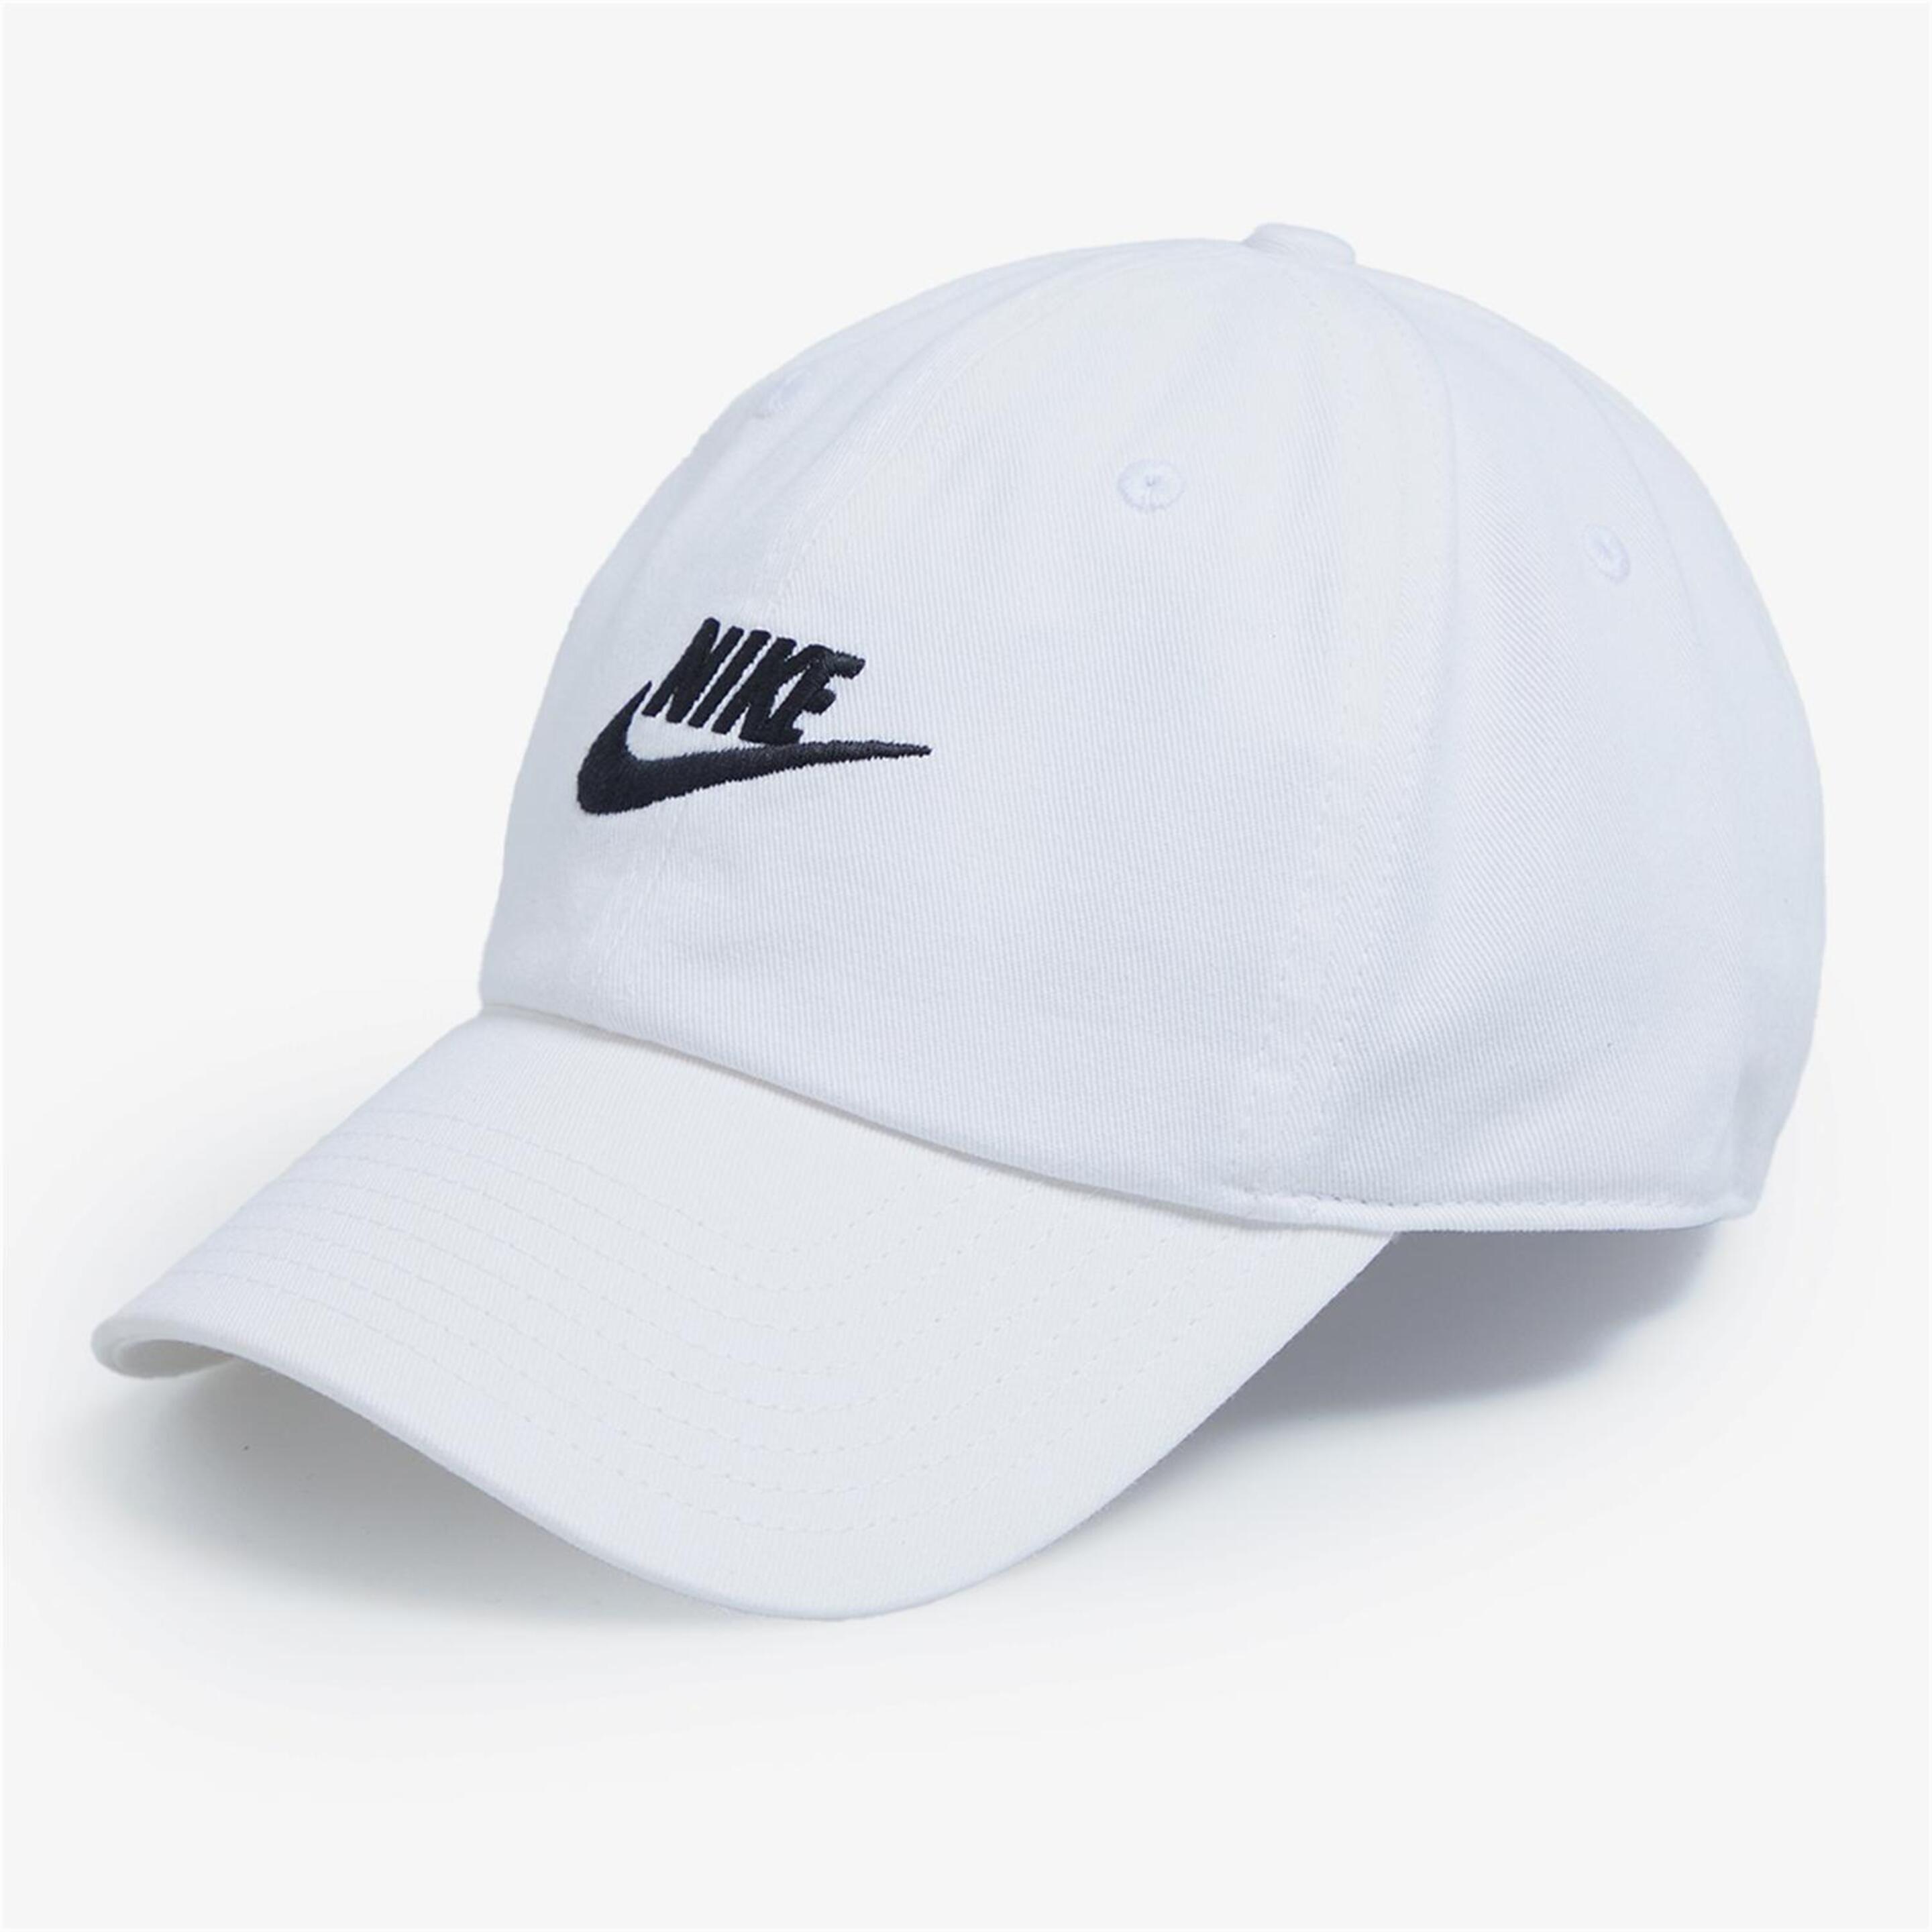 Nike Club - blanco - Gorra